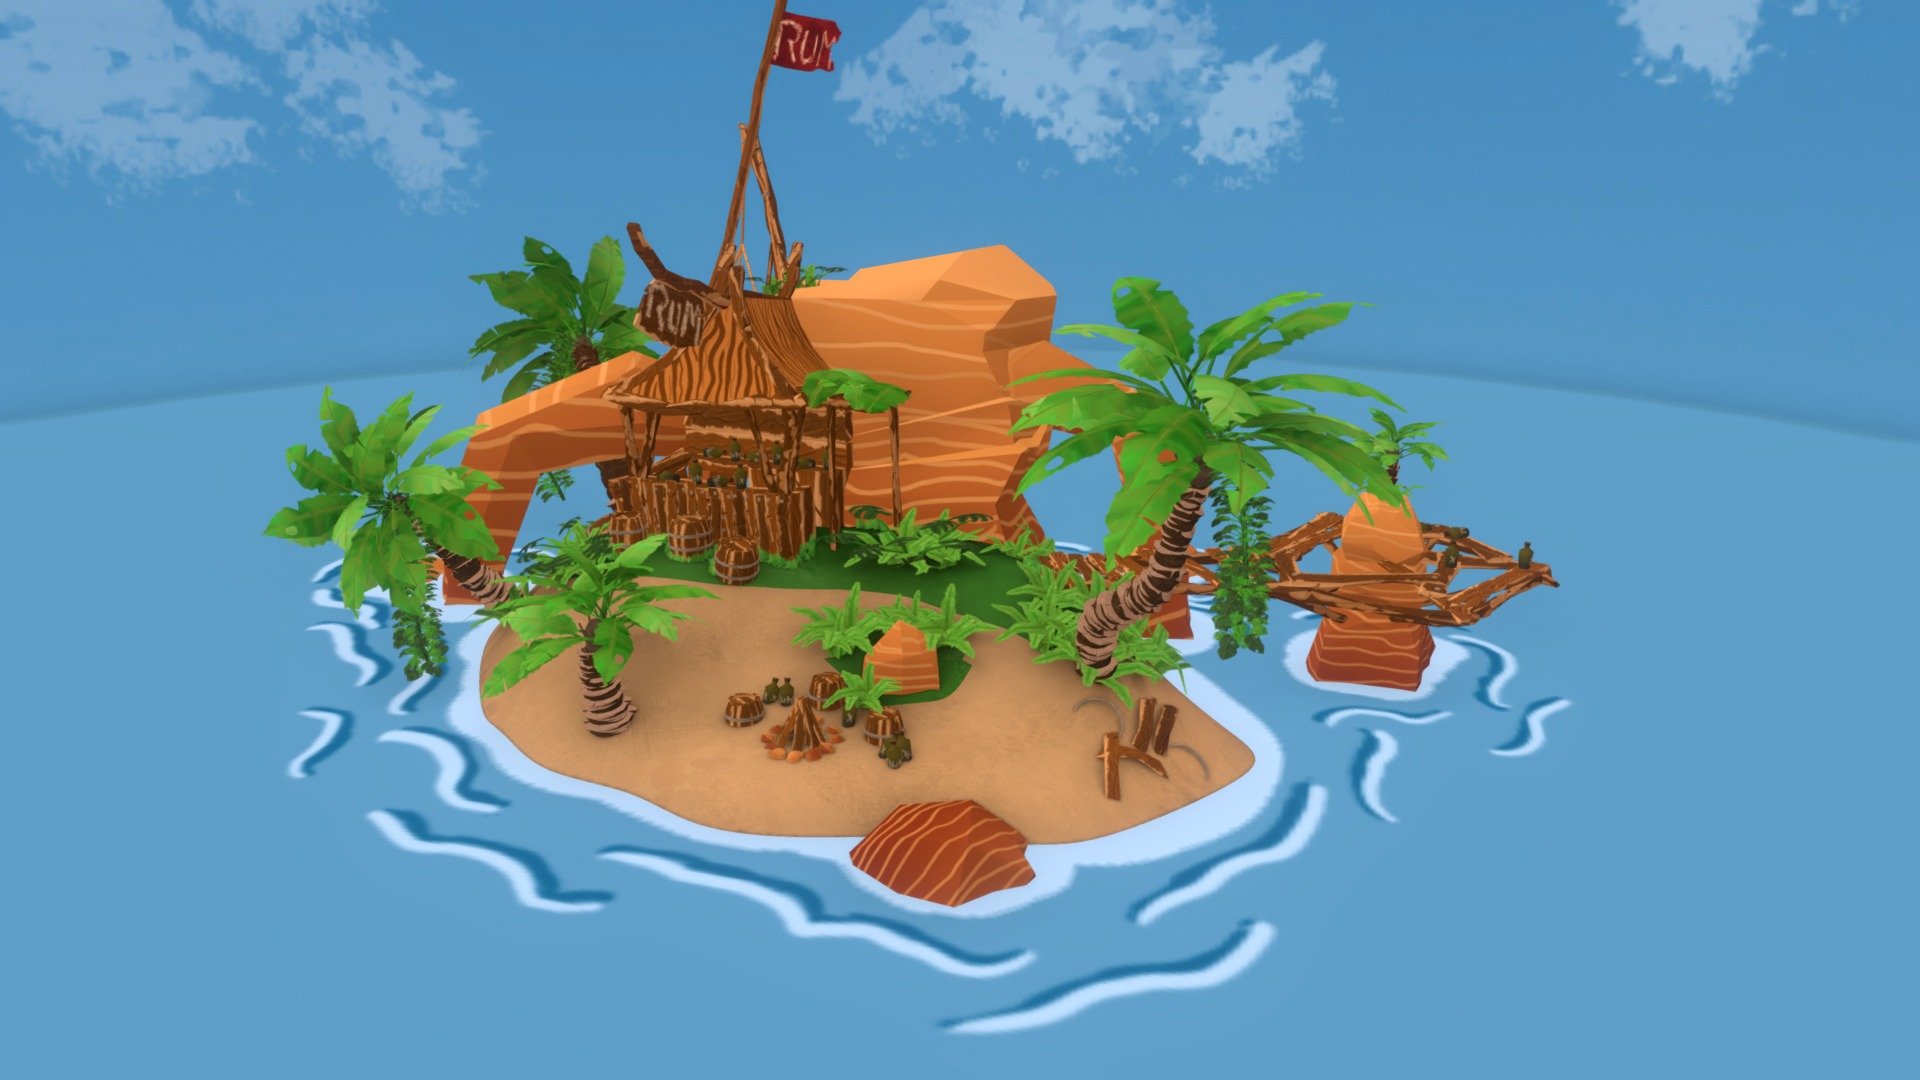 Pirate Rum Island